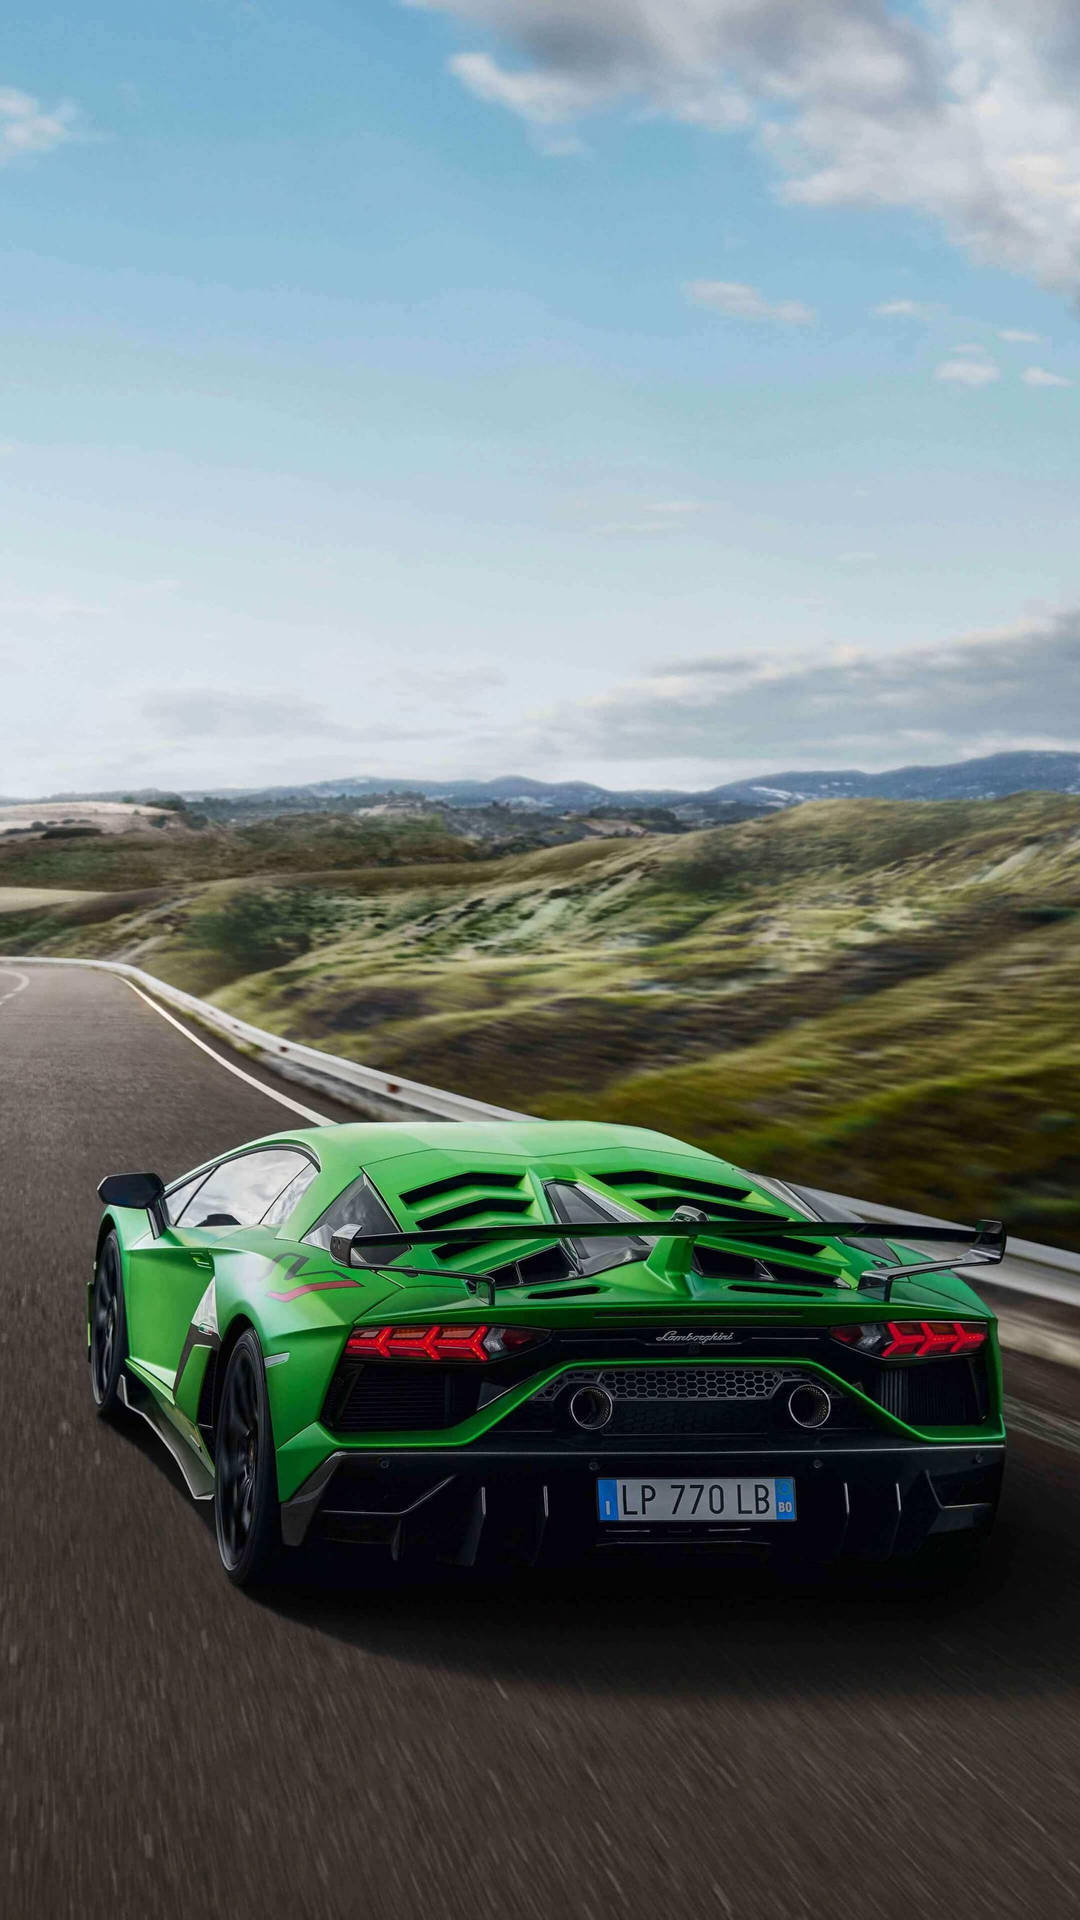 !Nyd luksus af en Lamborghini - nu på din iPhone! Wallpaper